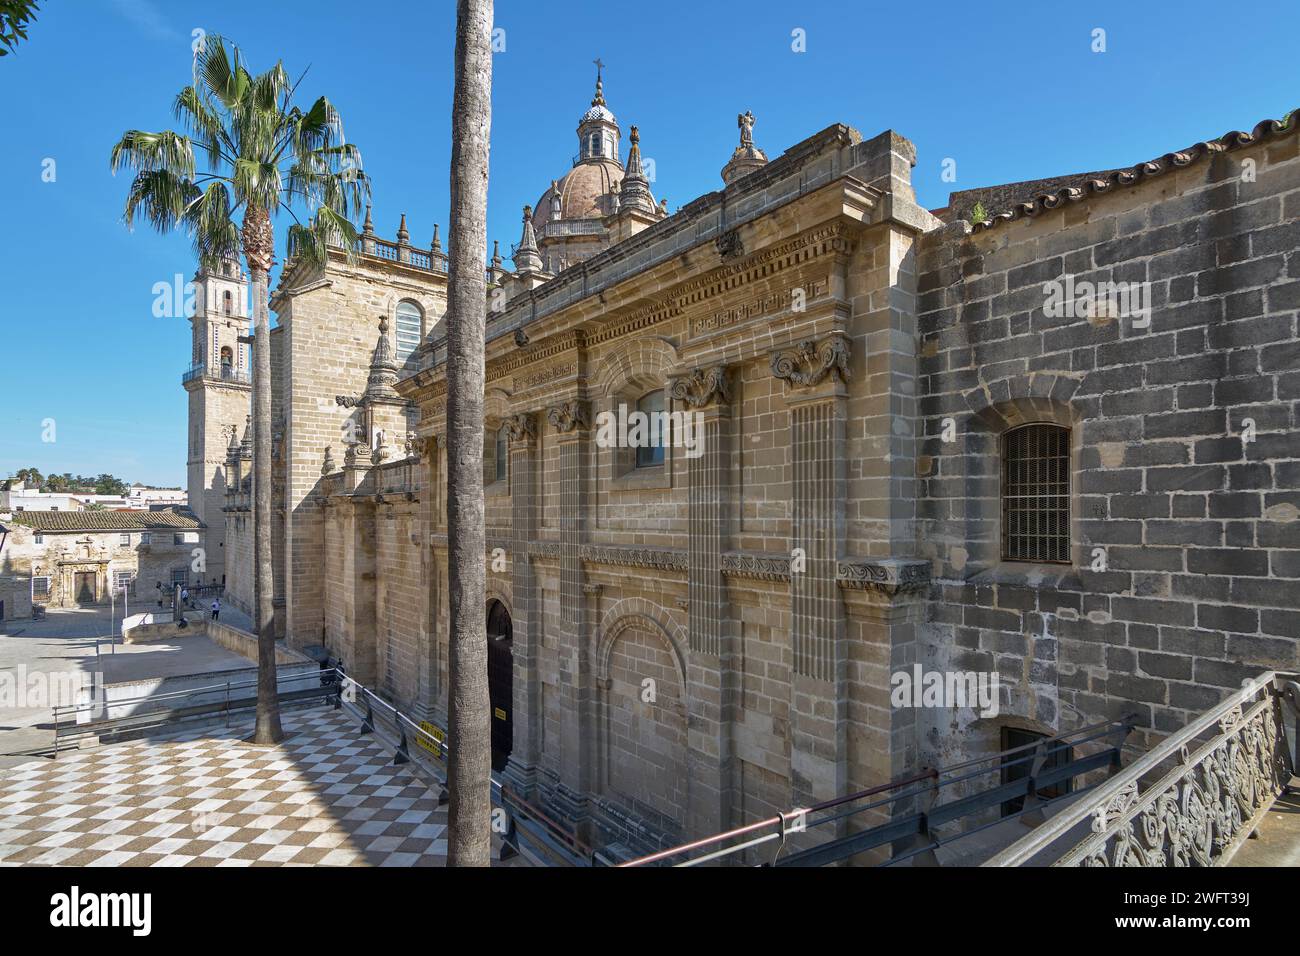 Vue latérale de l'ancienne cathédrale magnifiquement détaillée de Jerez de la Frontera sous un ciel bleu clair. Banque D'Images